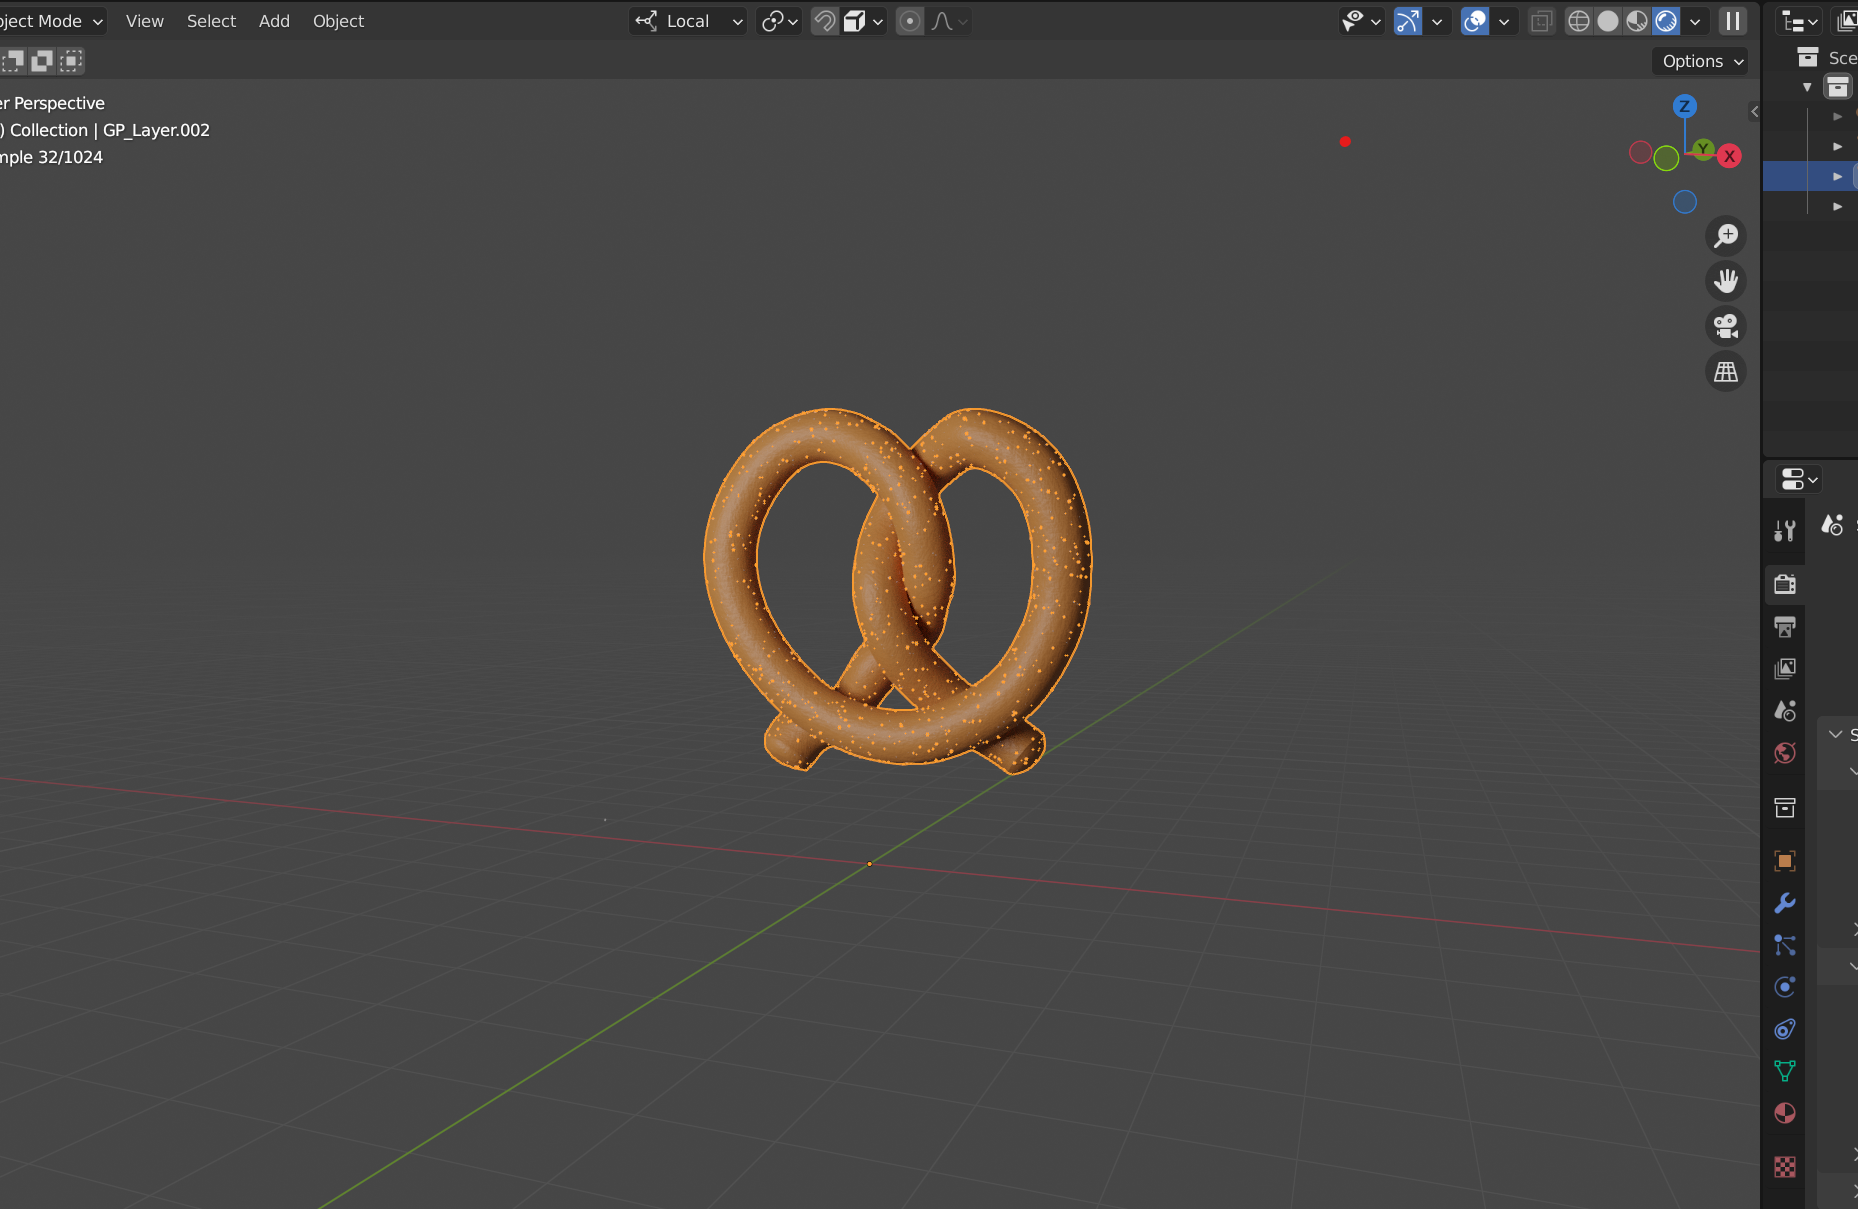 A 3D pretzel, made in Blender.